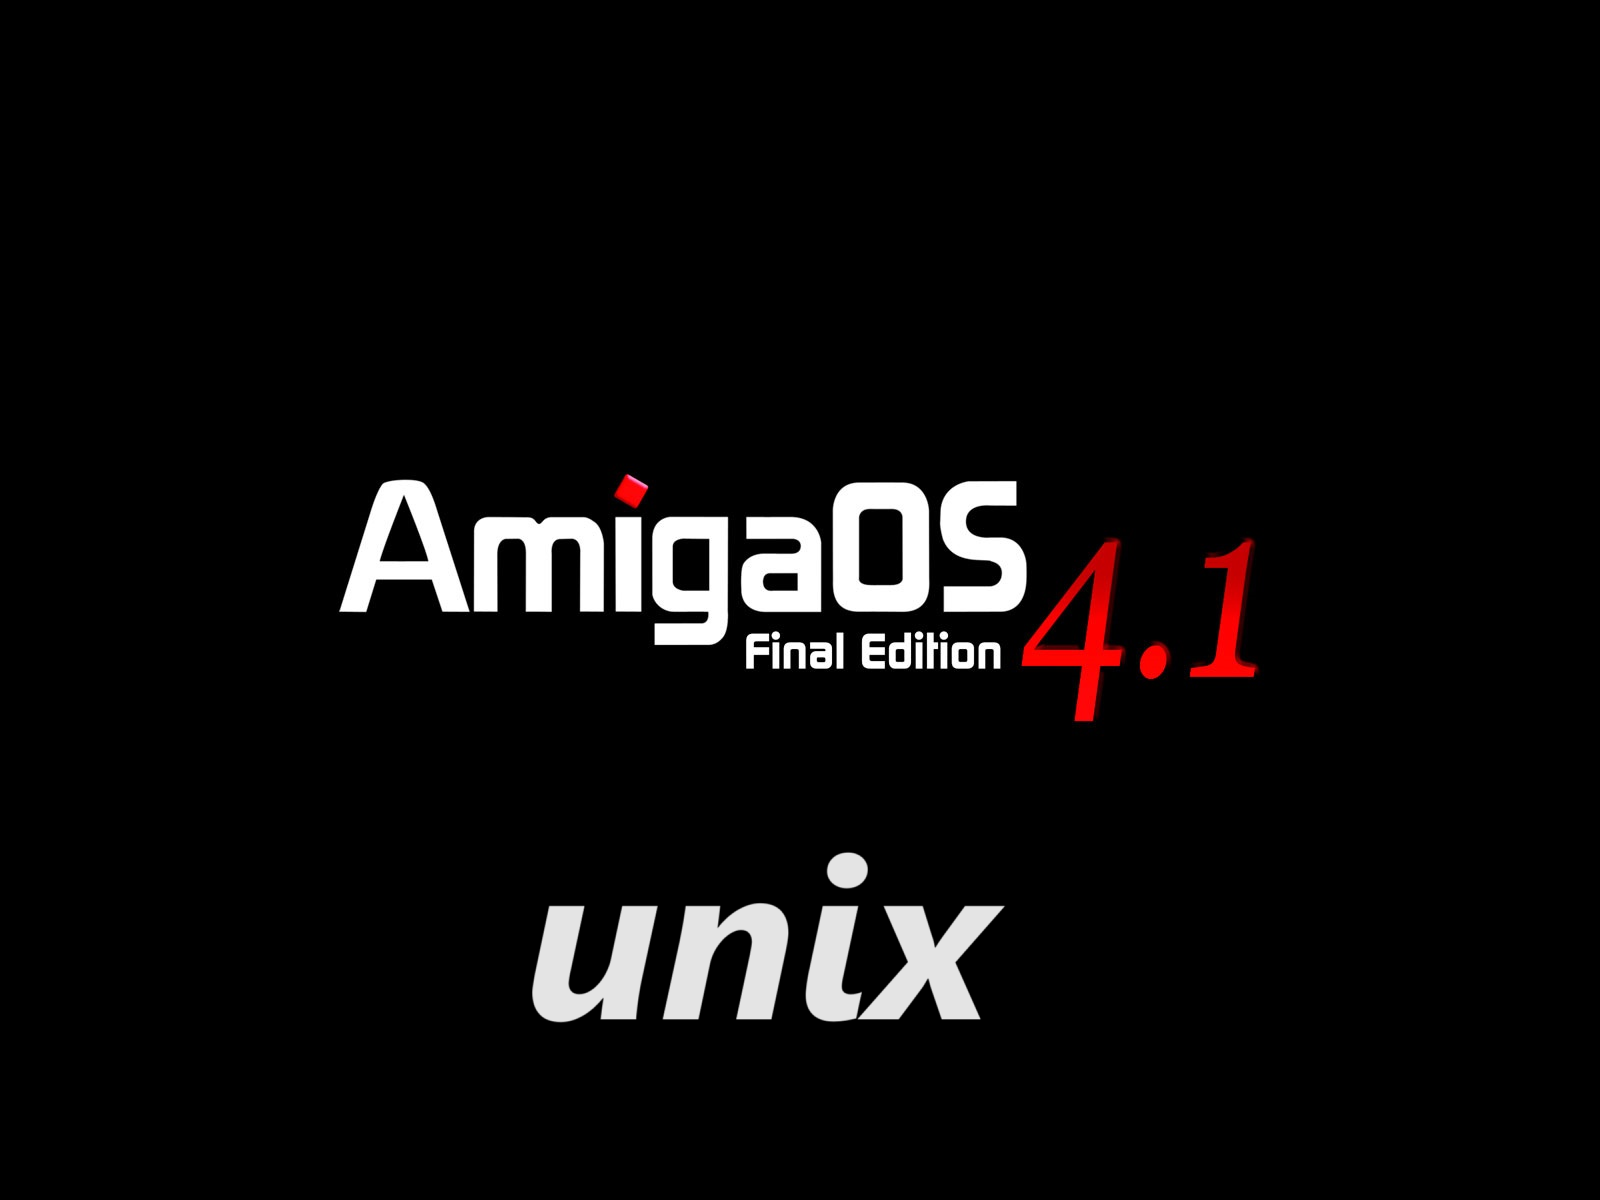 Amiga Unix Linux AmiCygnix 4gb SD-CF Card based on amigaOS4.1